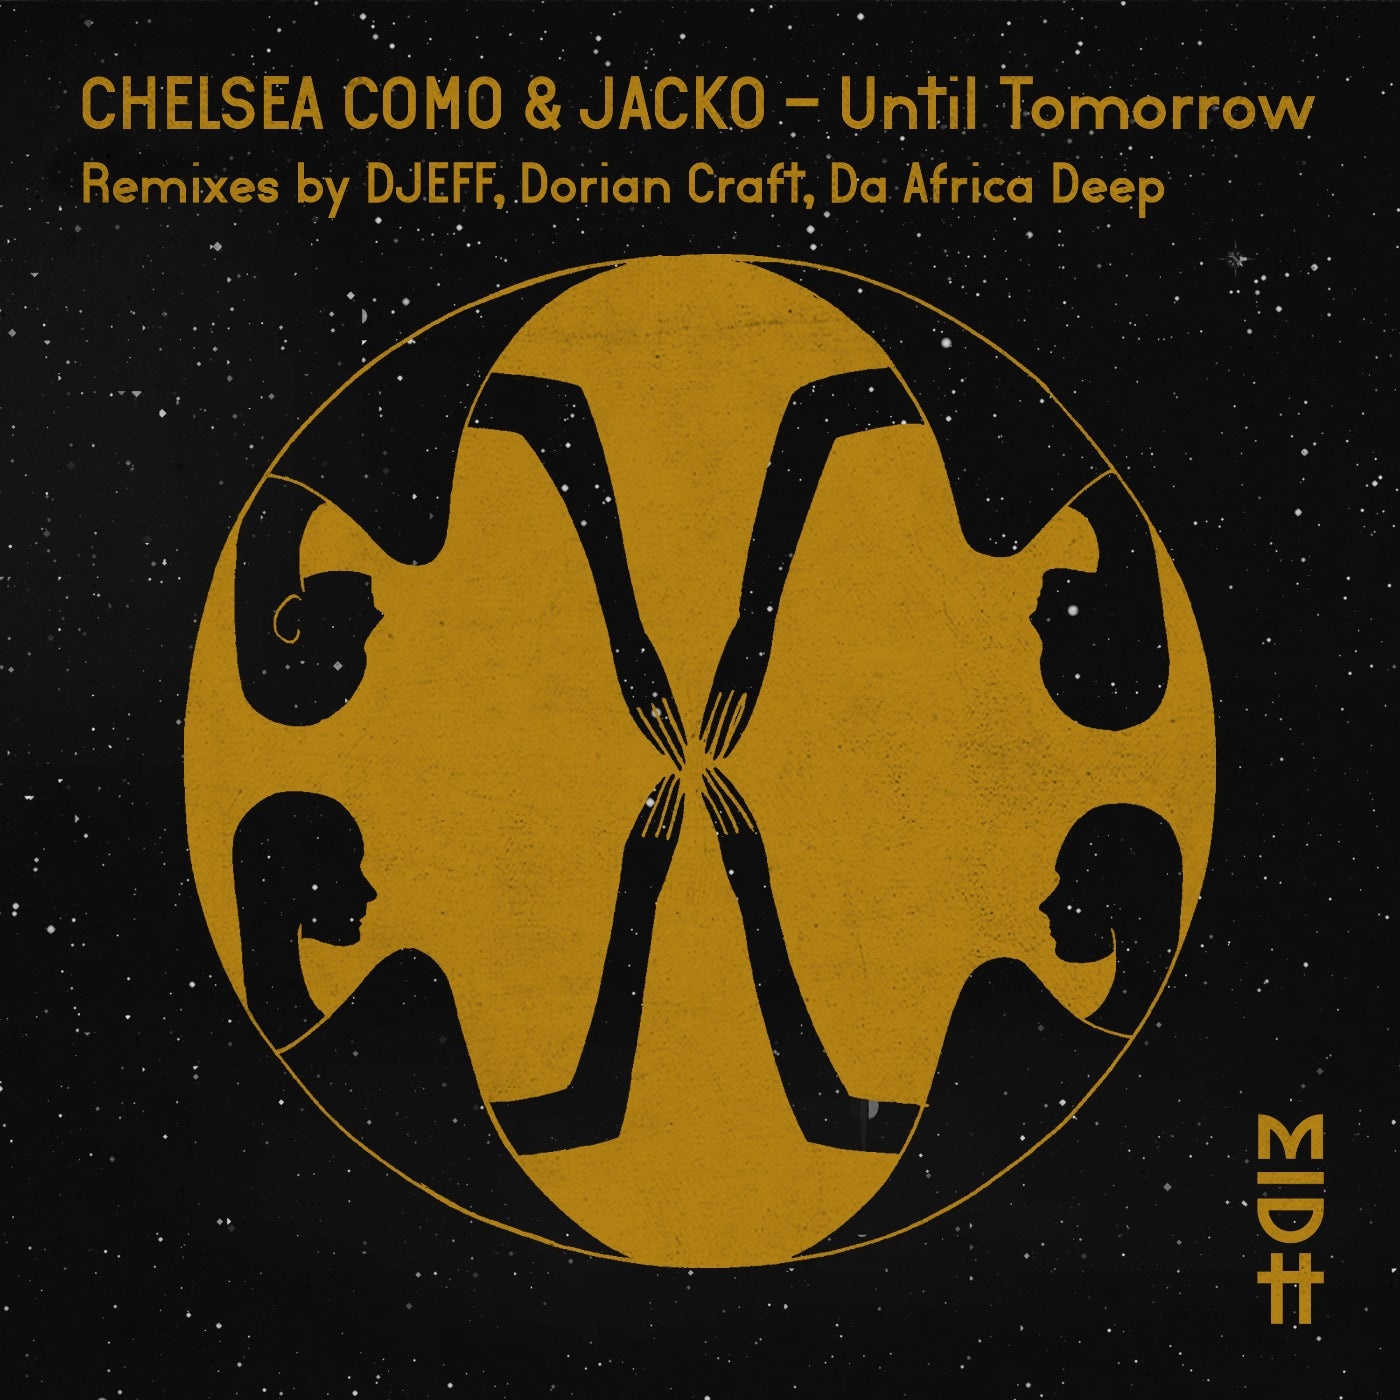 Jacko, Chelsea Como - Until Tomorrow [MIDH034]